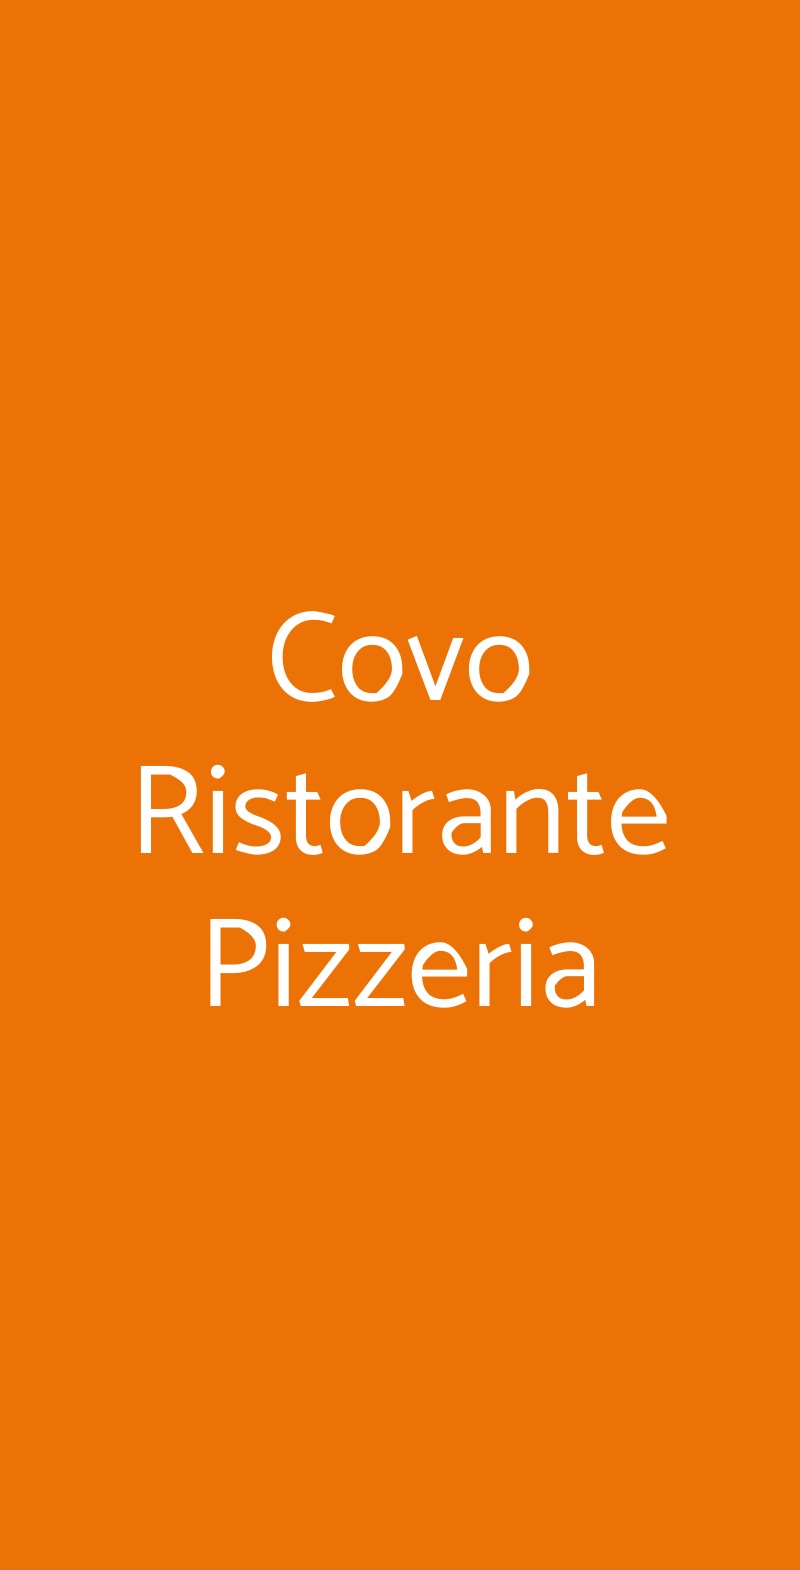 Covo Ristorante Pizzeria Lecce menù 1 pagina